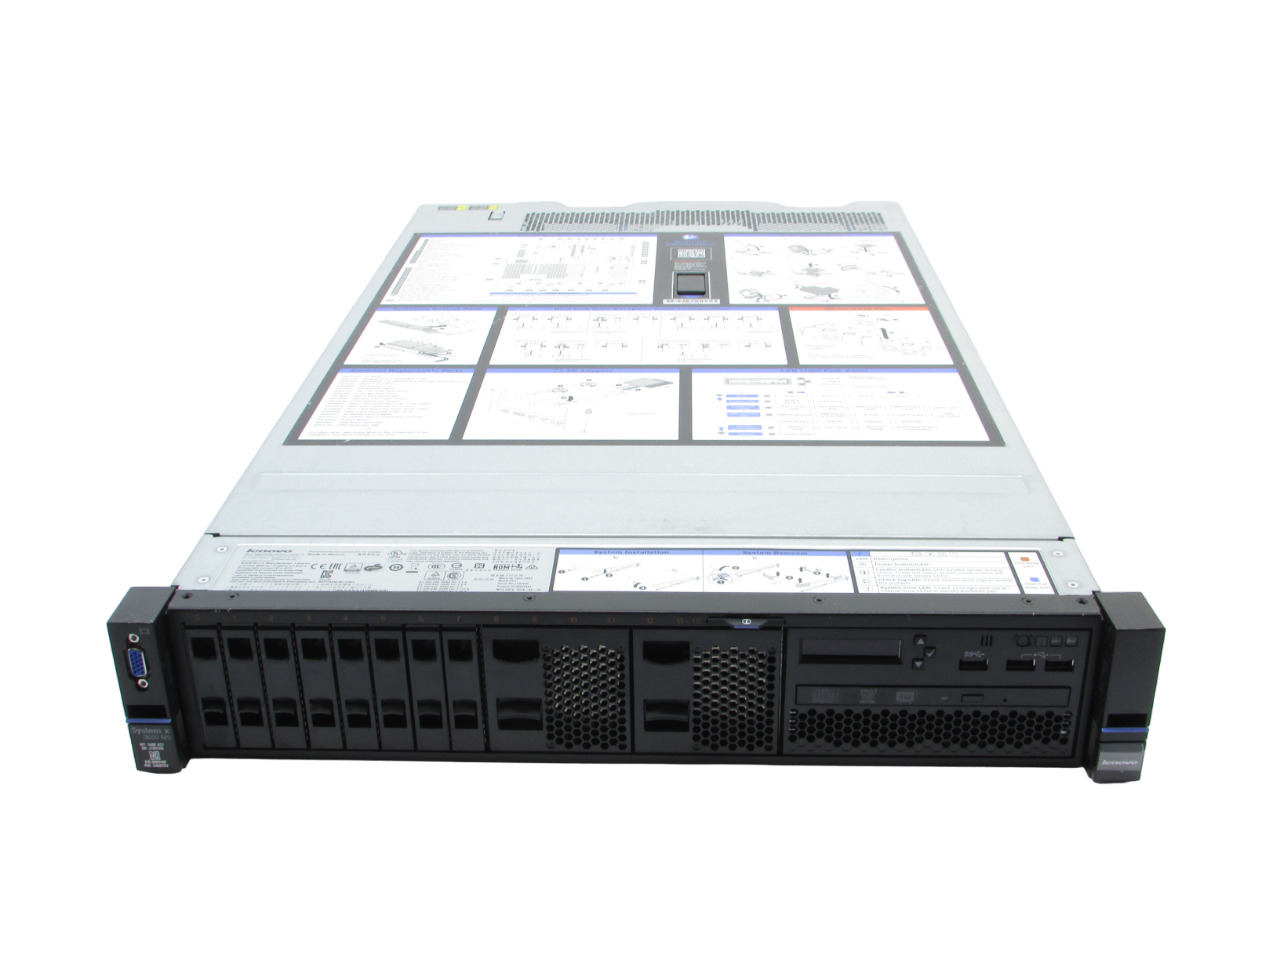 Lenovo System X 3650 M5 8-Bay 2x E5-2650v3 2.10 GHz 64GB RAM No Drives Server